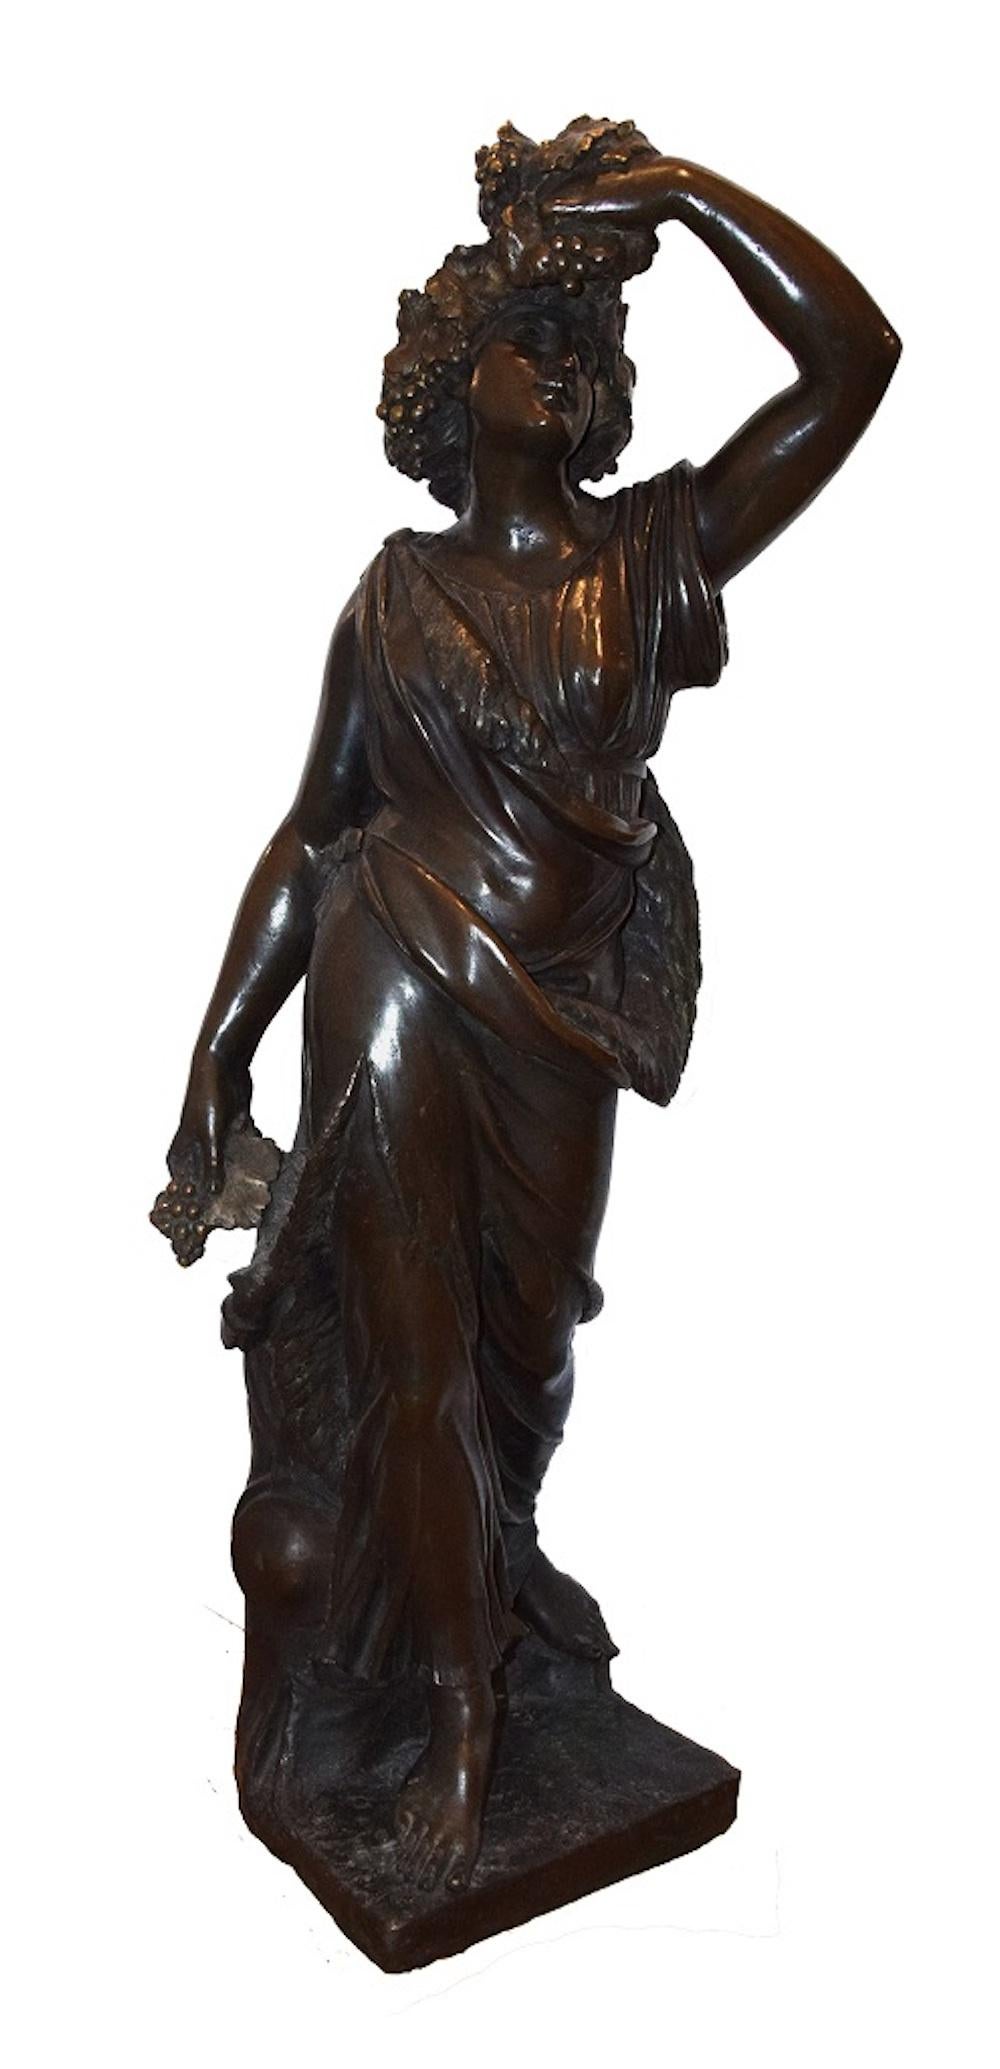 Suivre de Bacchus - Sculpture en bronze d'un artiste italien inconnu, fin 1800